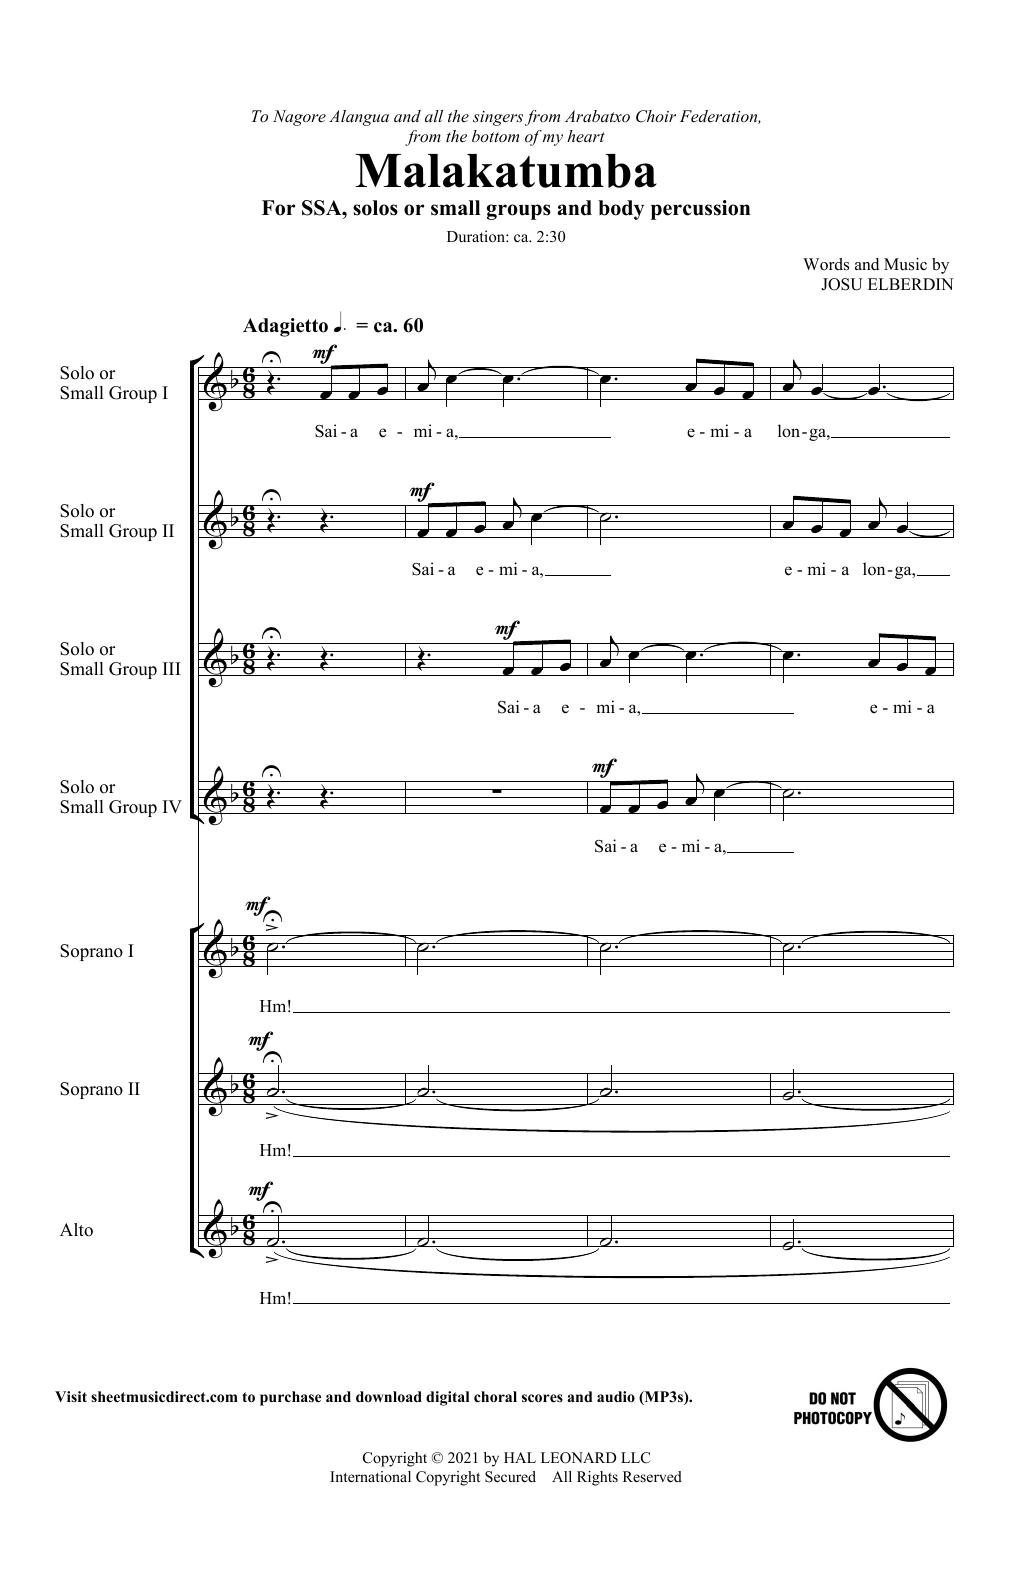 Josu Elberdin Malakatumba Sheet Music Notes & Chords for SSA Choir - Download or Print PDF